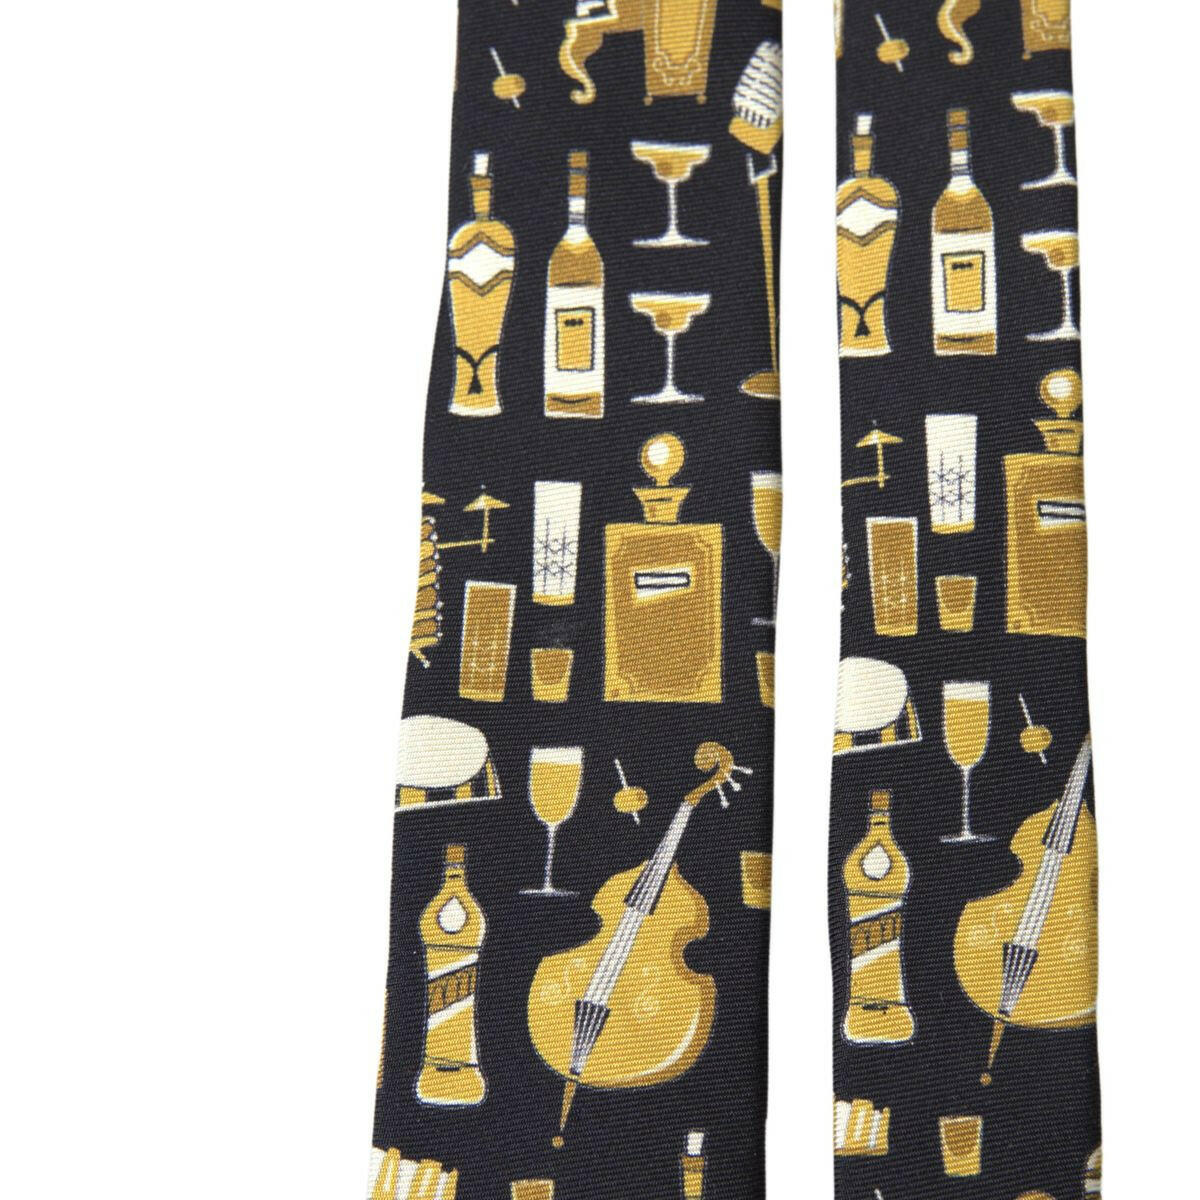 Dolce & Gabbana Black Yellow Musical Instrument Print Necktie Tie - GENUINE AUTHENTIC BRAND LLC  